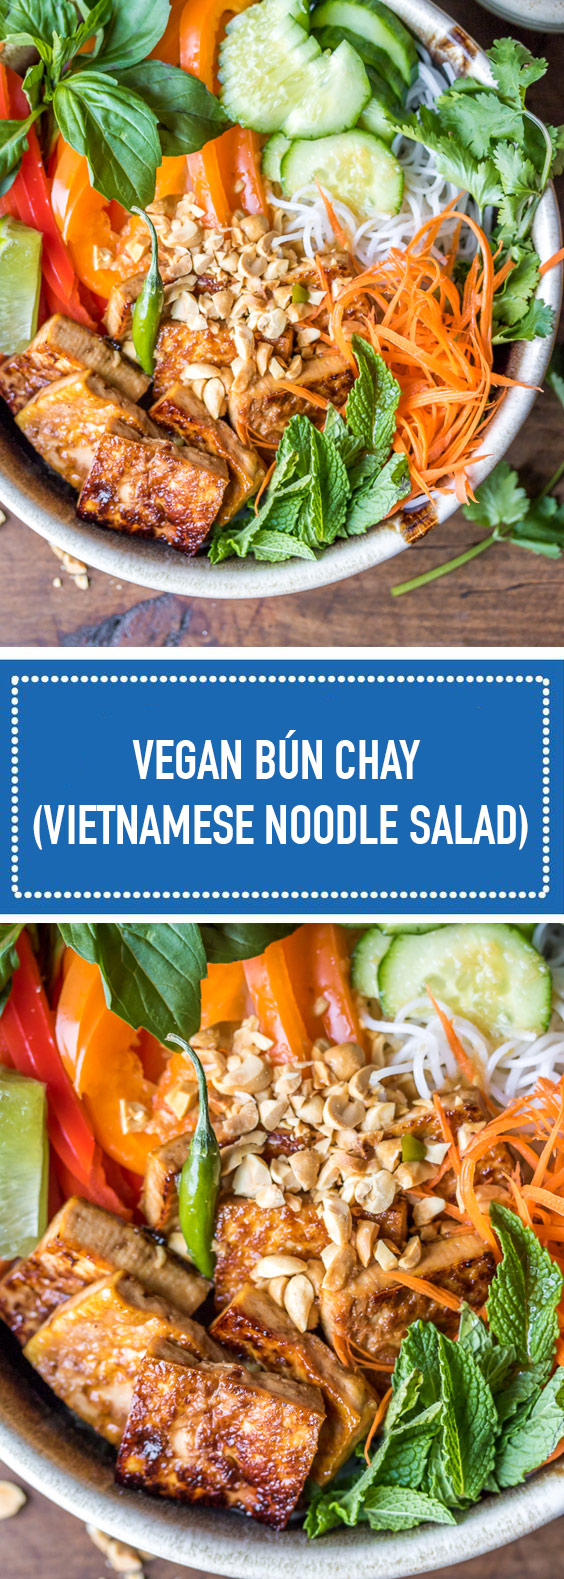 Vegan Bún Chay Noodle Salad